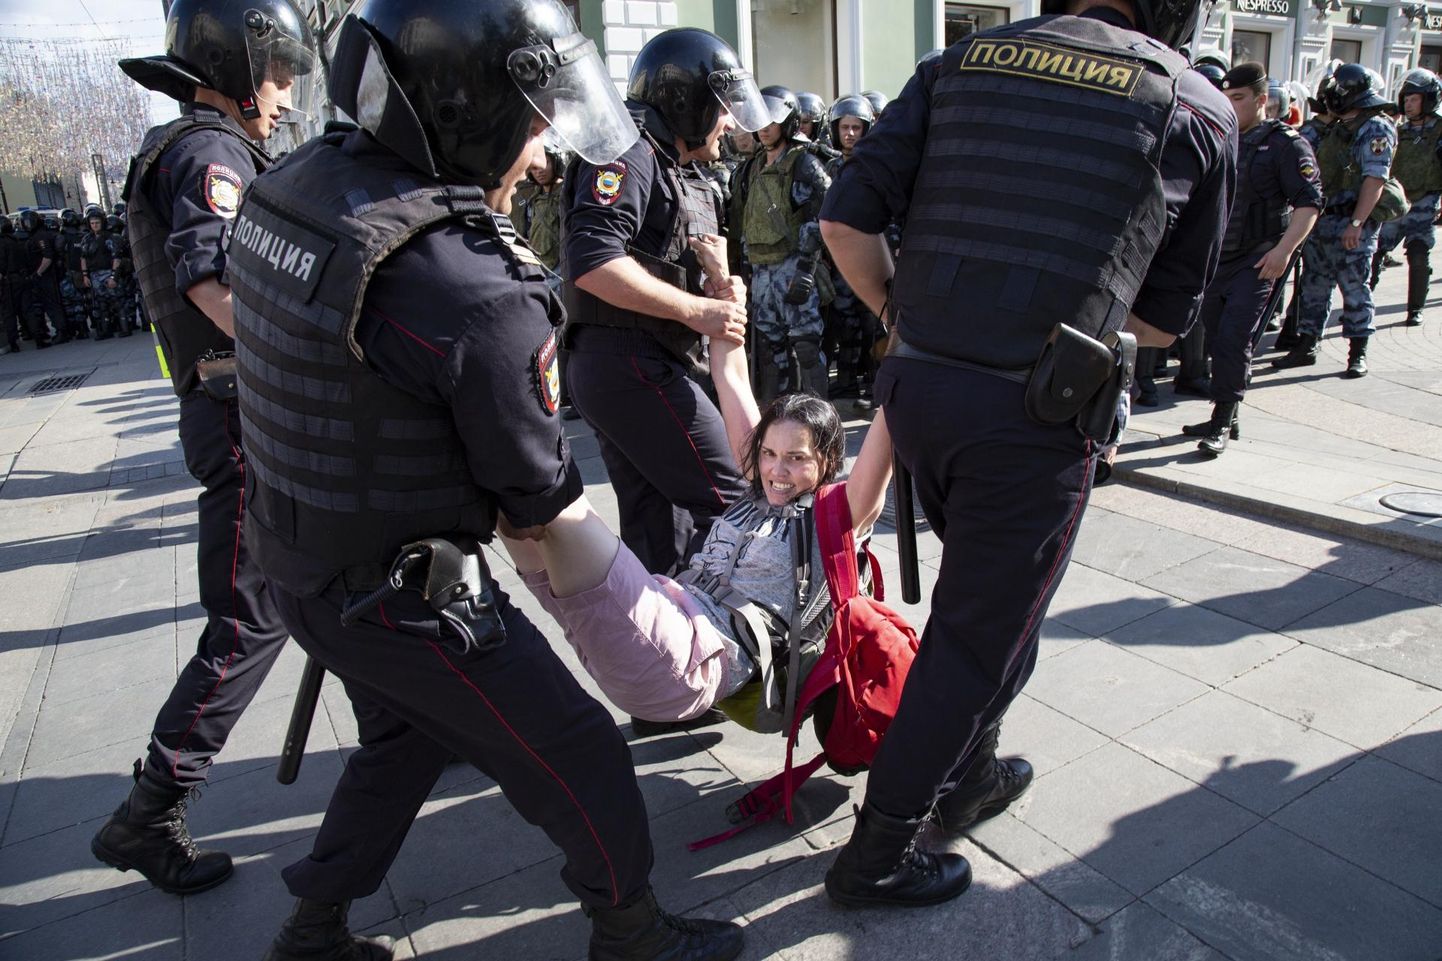 Moskvas laupäeval toimunud meeleavalduse laiali ajamiseks kasutas politsei jõudu ning nii mõningi protestija sai vahistamise käigus vigastada. 